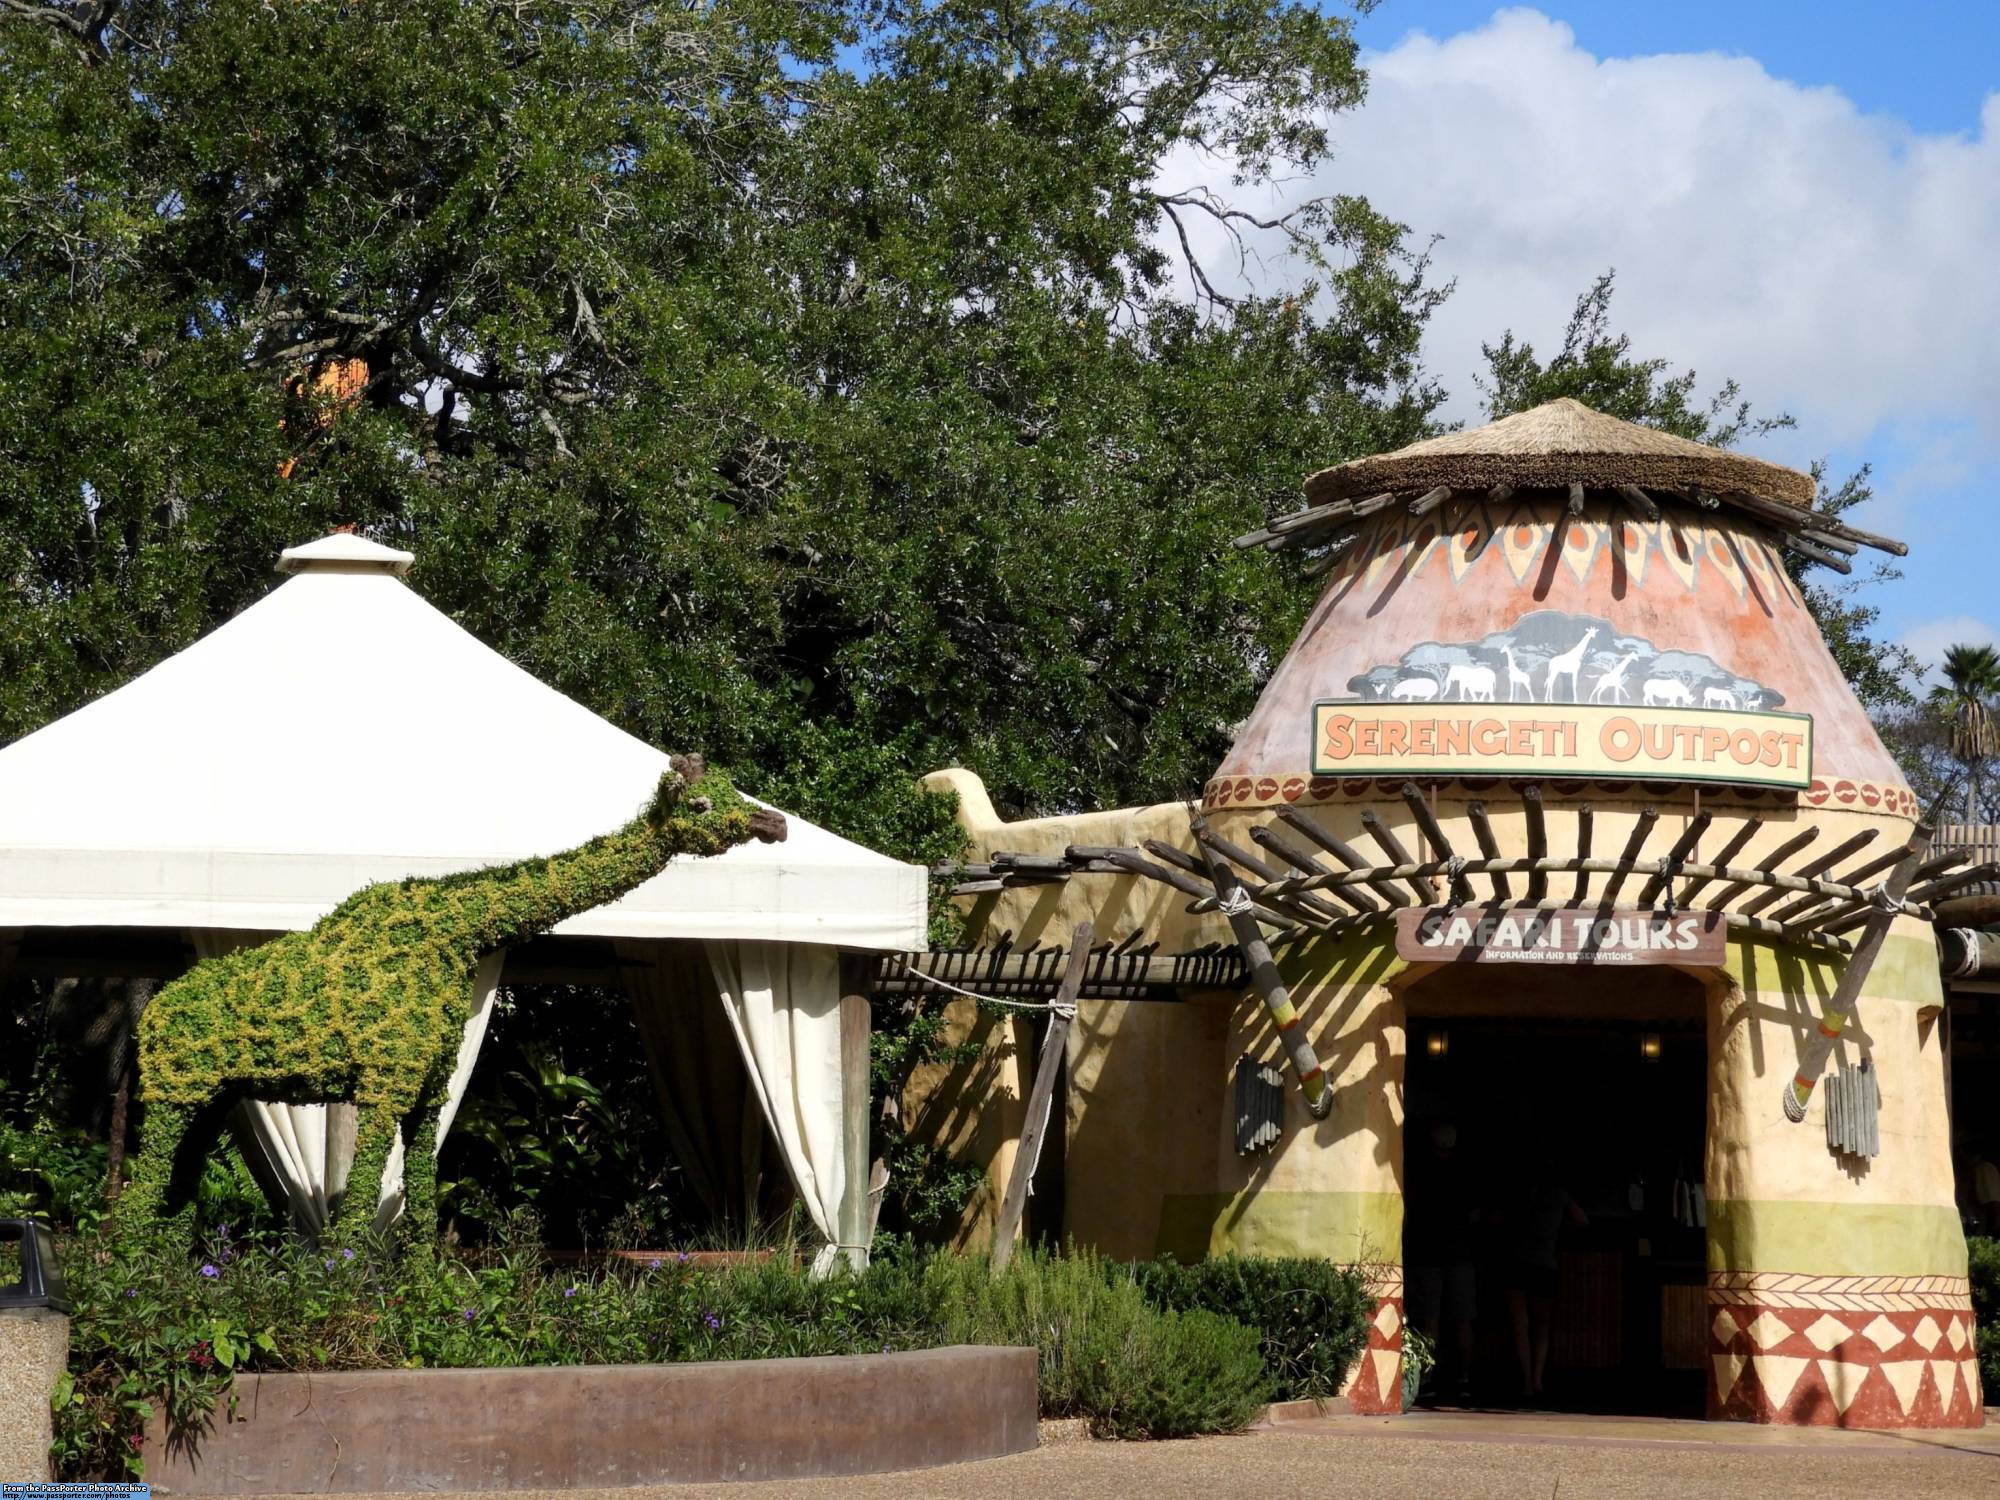 Busch Gardens - Serengeti Outpost